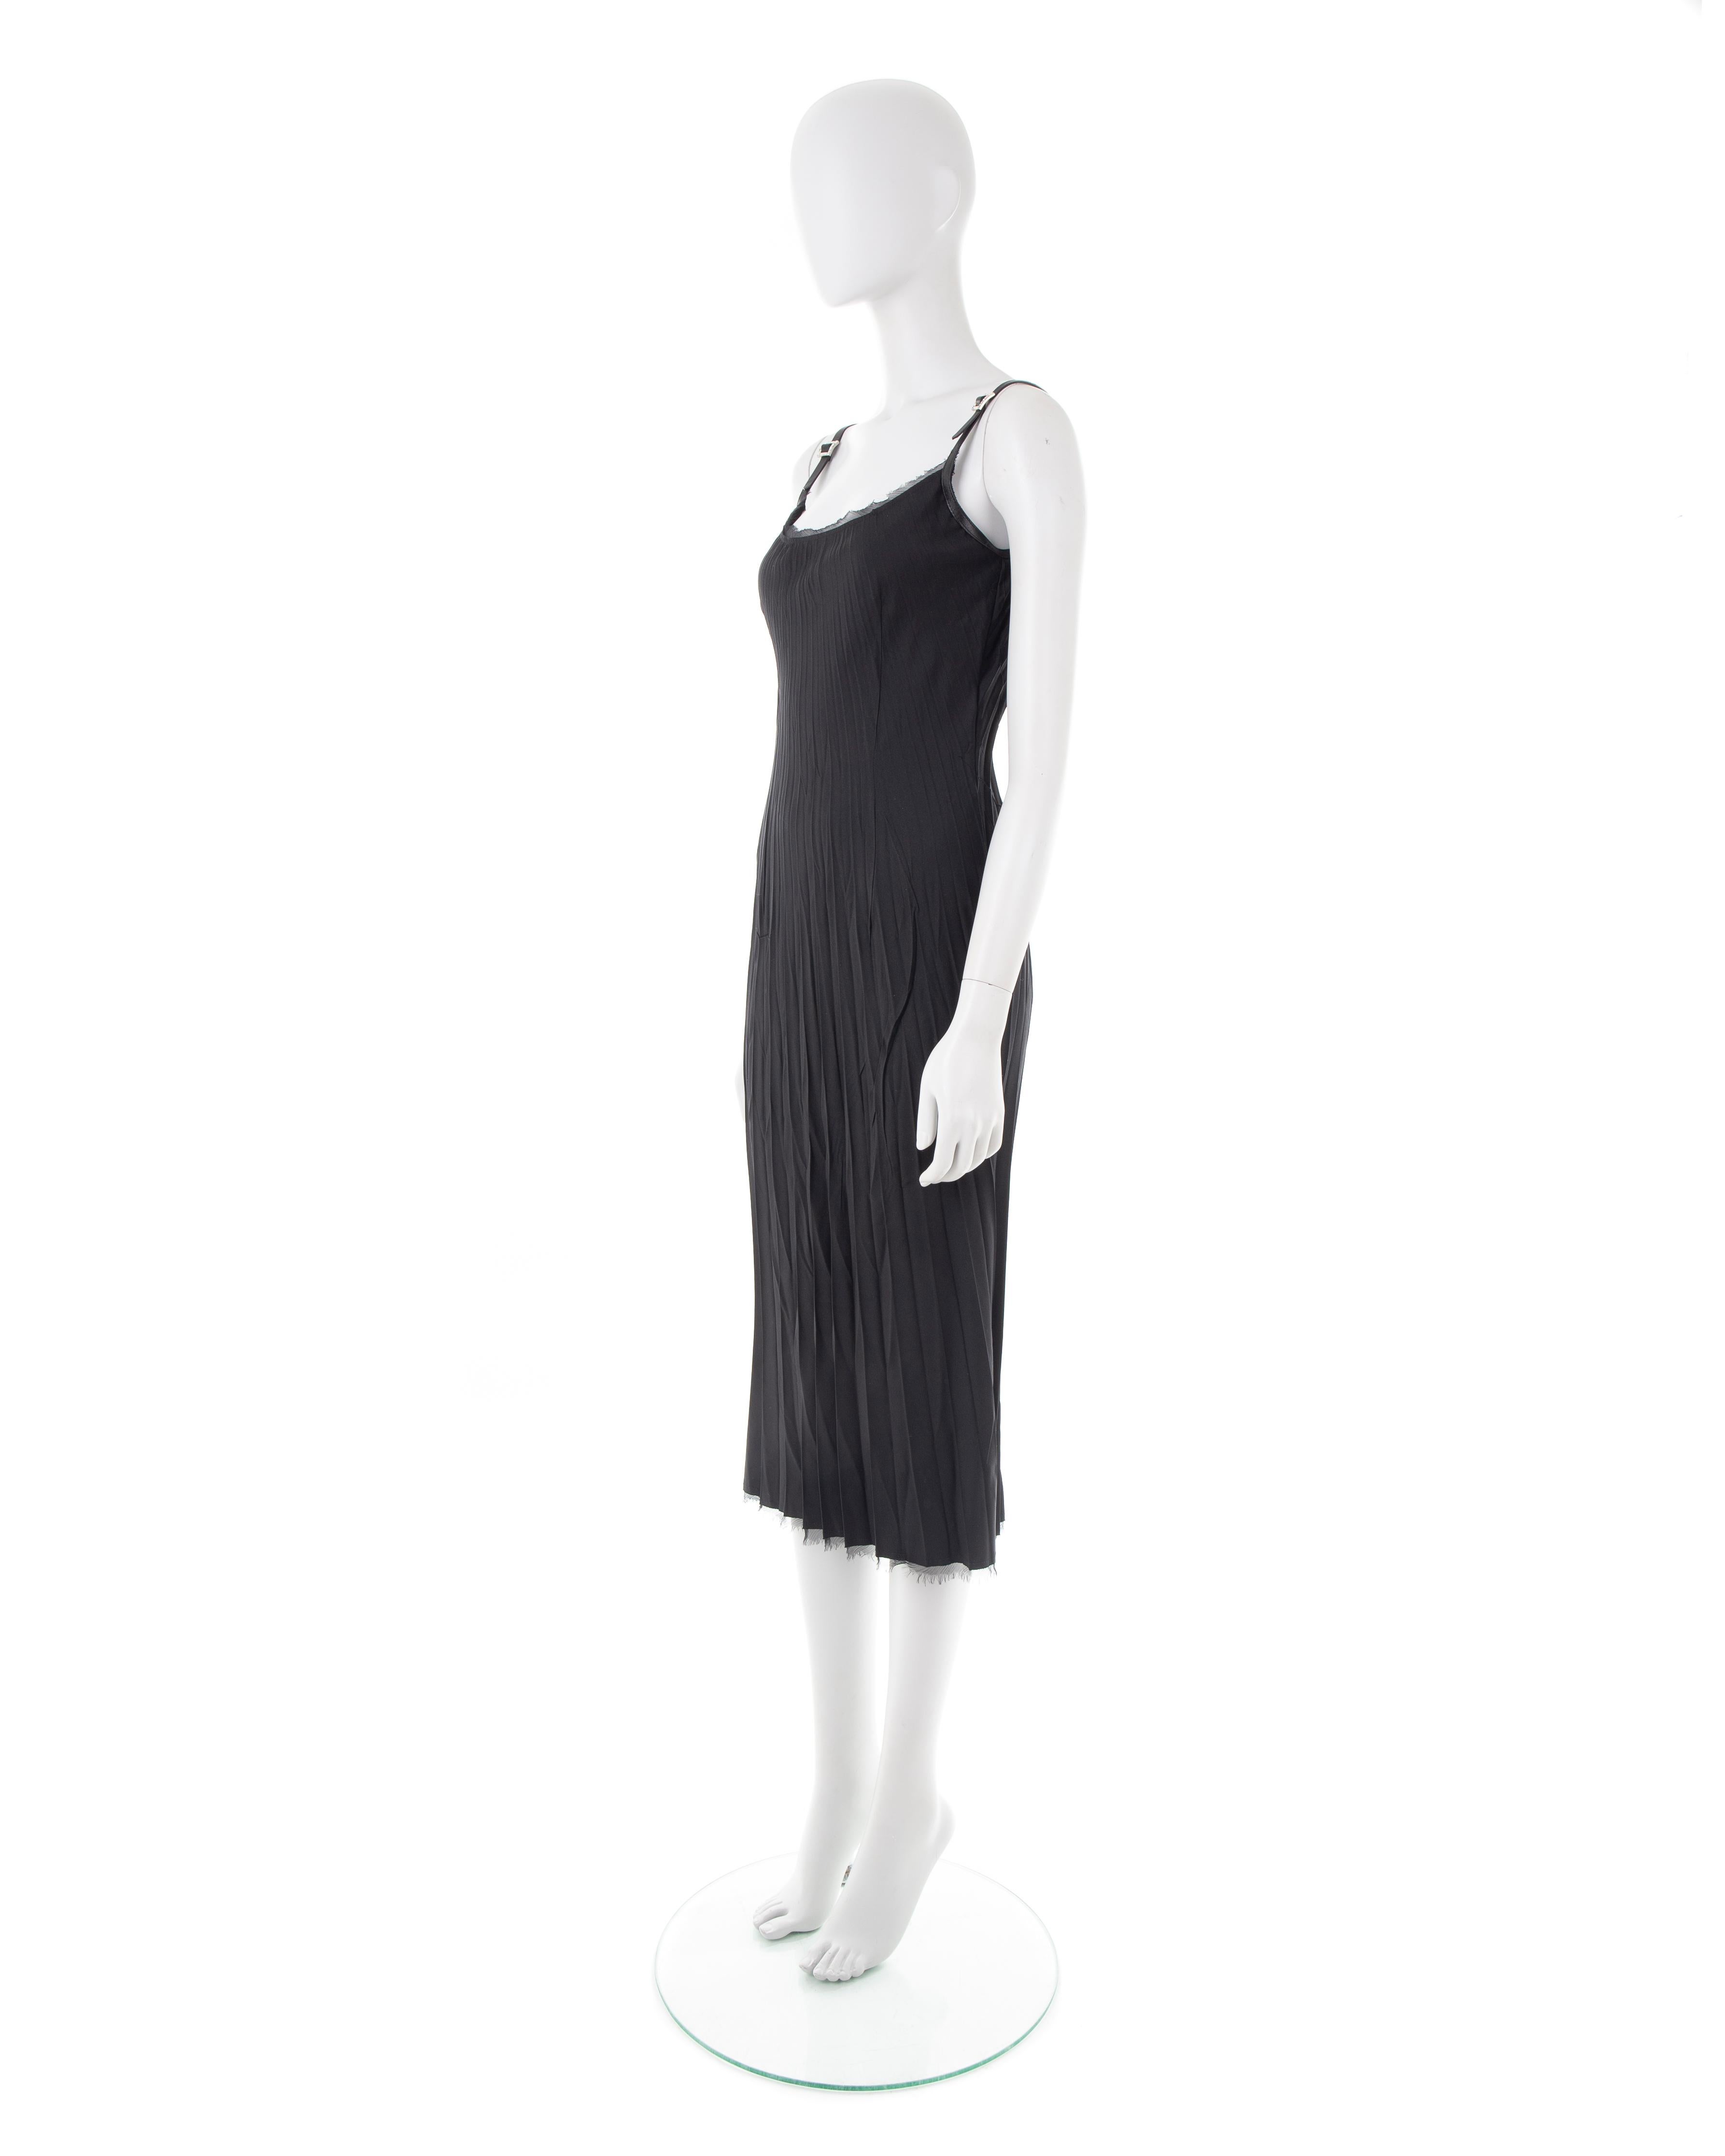 Black Ermanno Scervino black silk crinkled dress with crystal straps, 2000s ca. For Sale